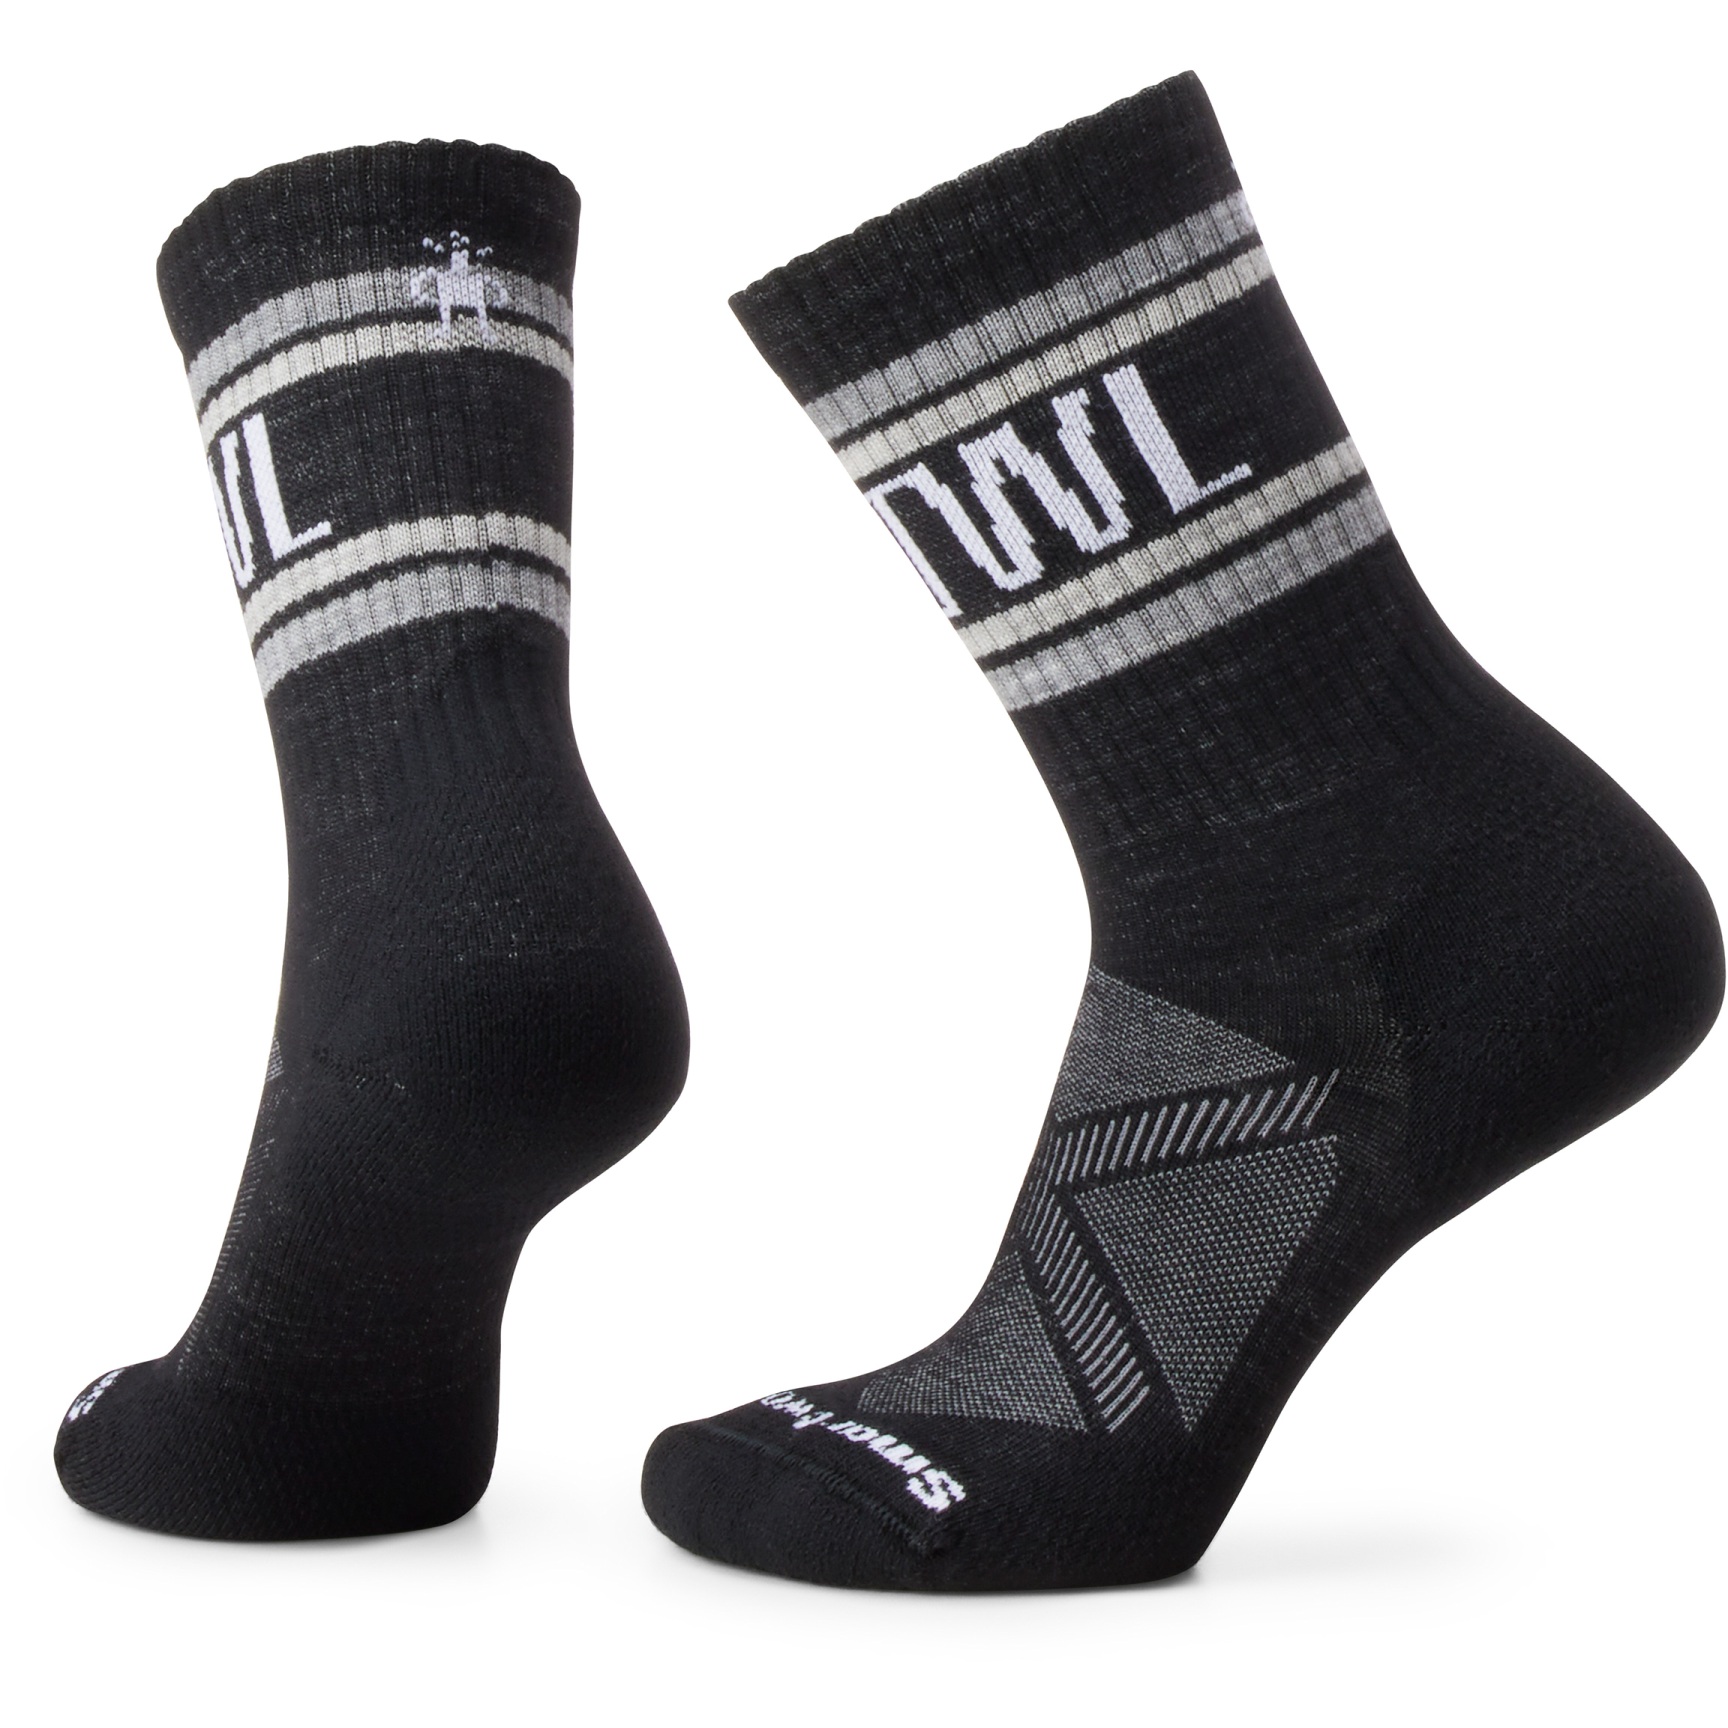 Produktbild von SmartWool Athletic Retro Stripe Crew Socken - 001 schwarz